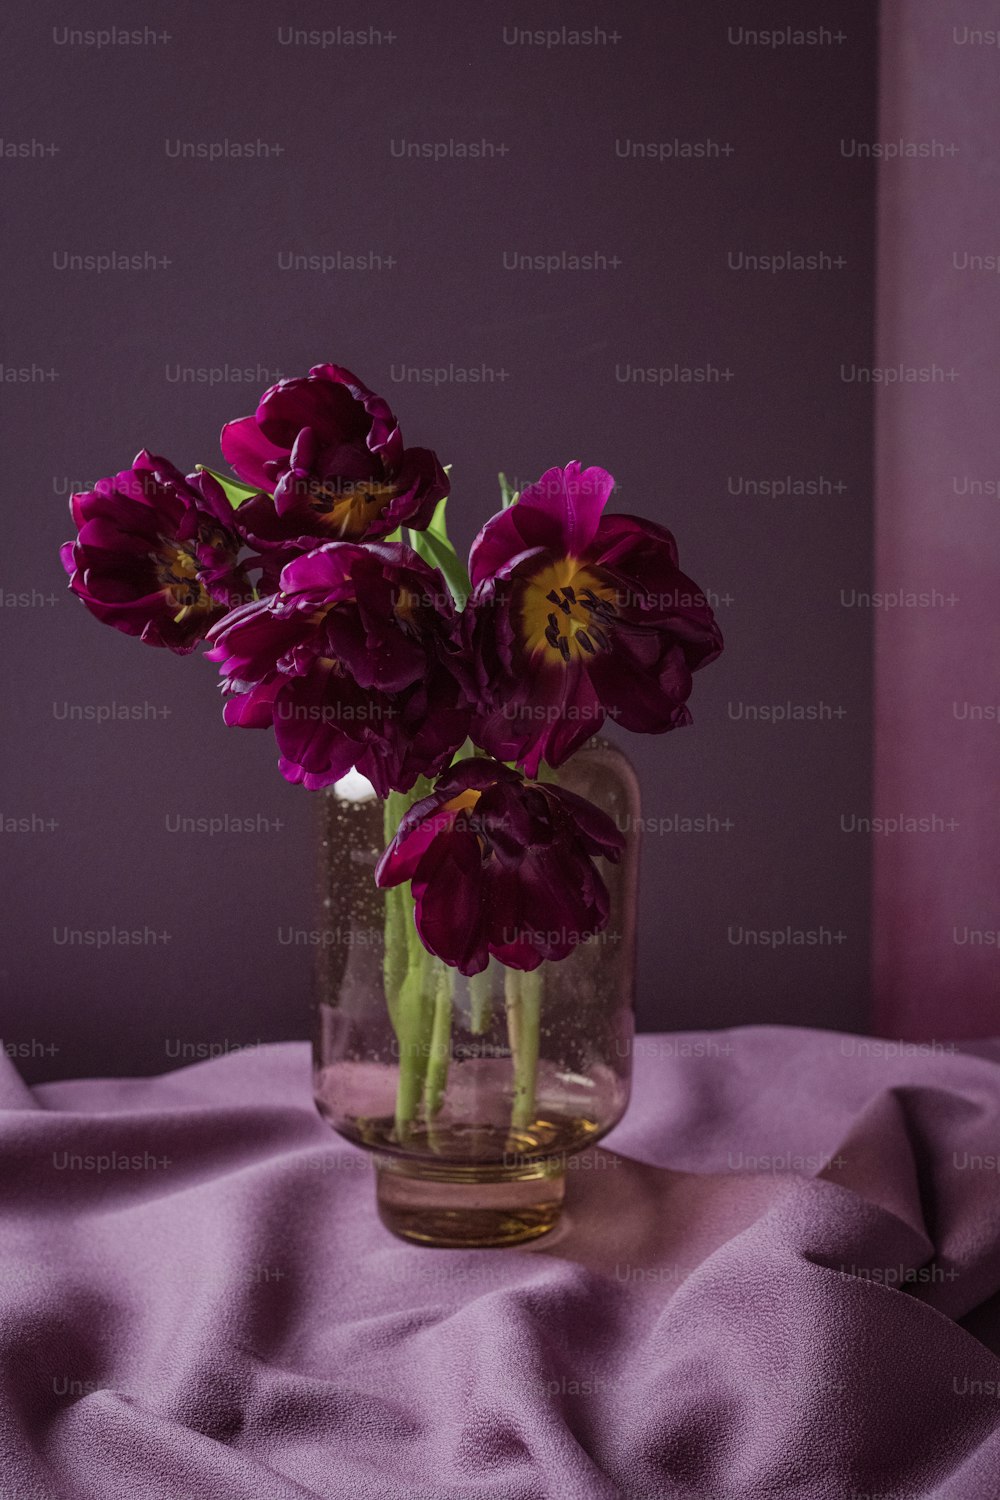 テーブルの上に紫色の花がいっぱいの瓶